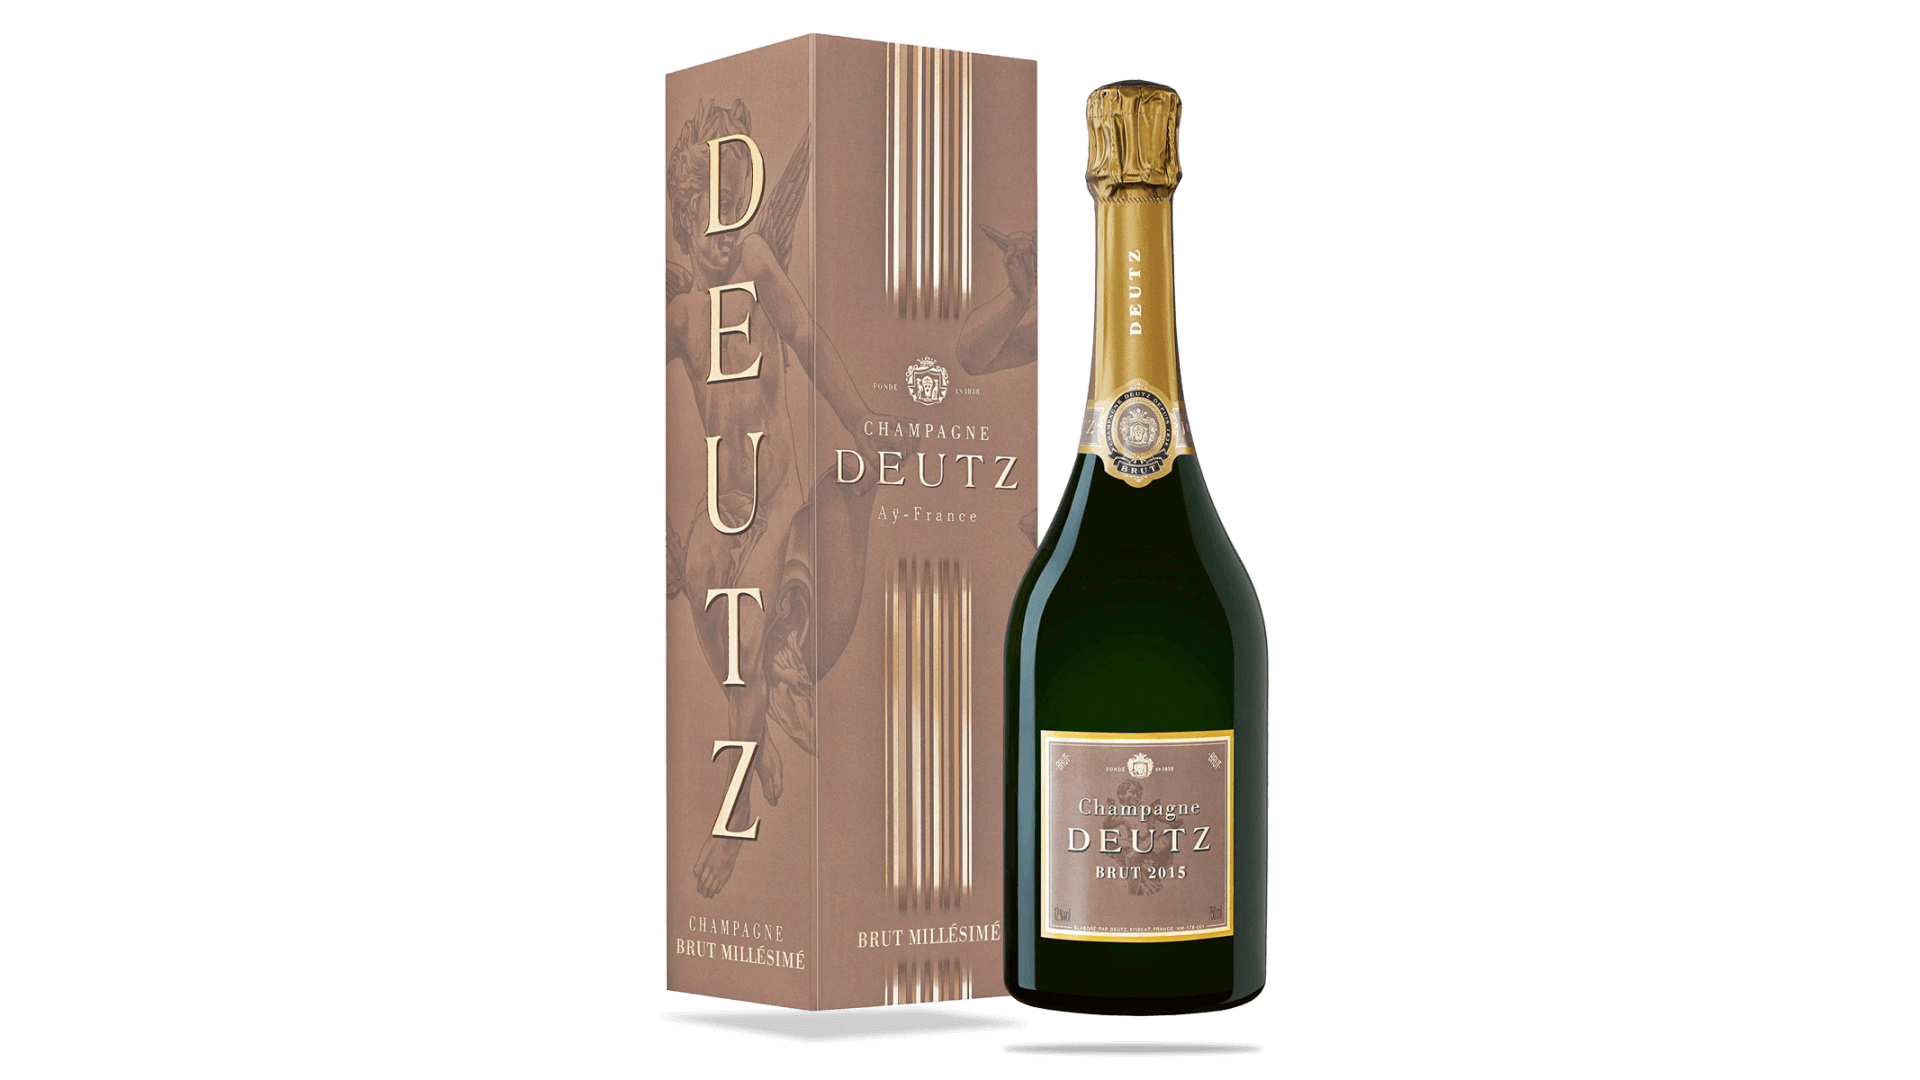 Champagne Deutz - Brut Millésimé 2015